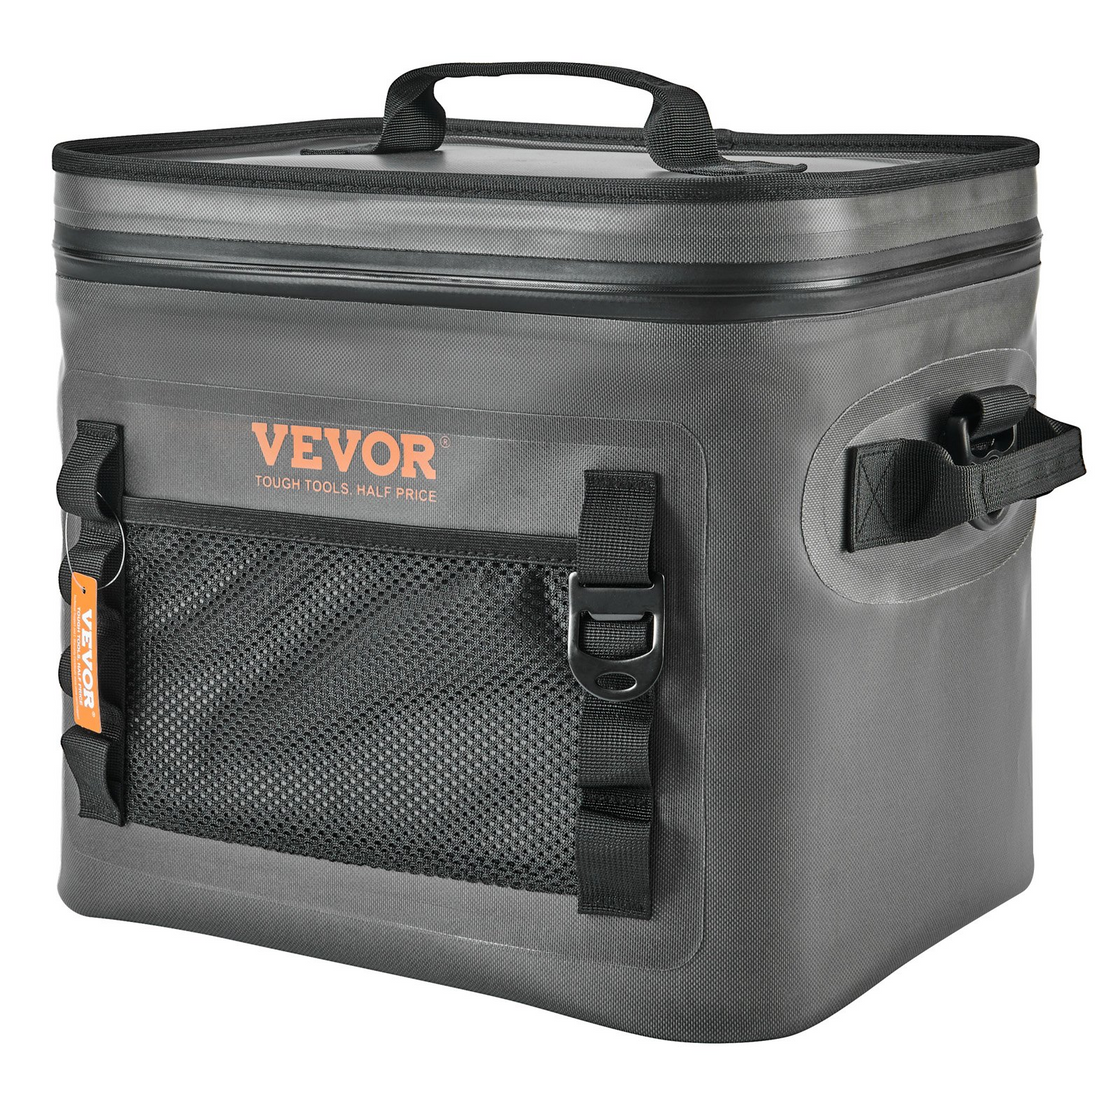 VEVOR Soft Cooler Bag - Leakproof & Waterproof Insulated Cooler for Outdoor Activities